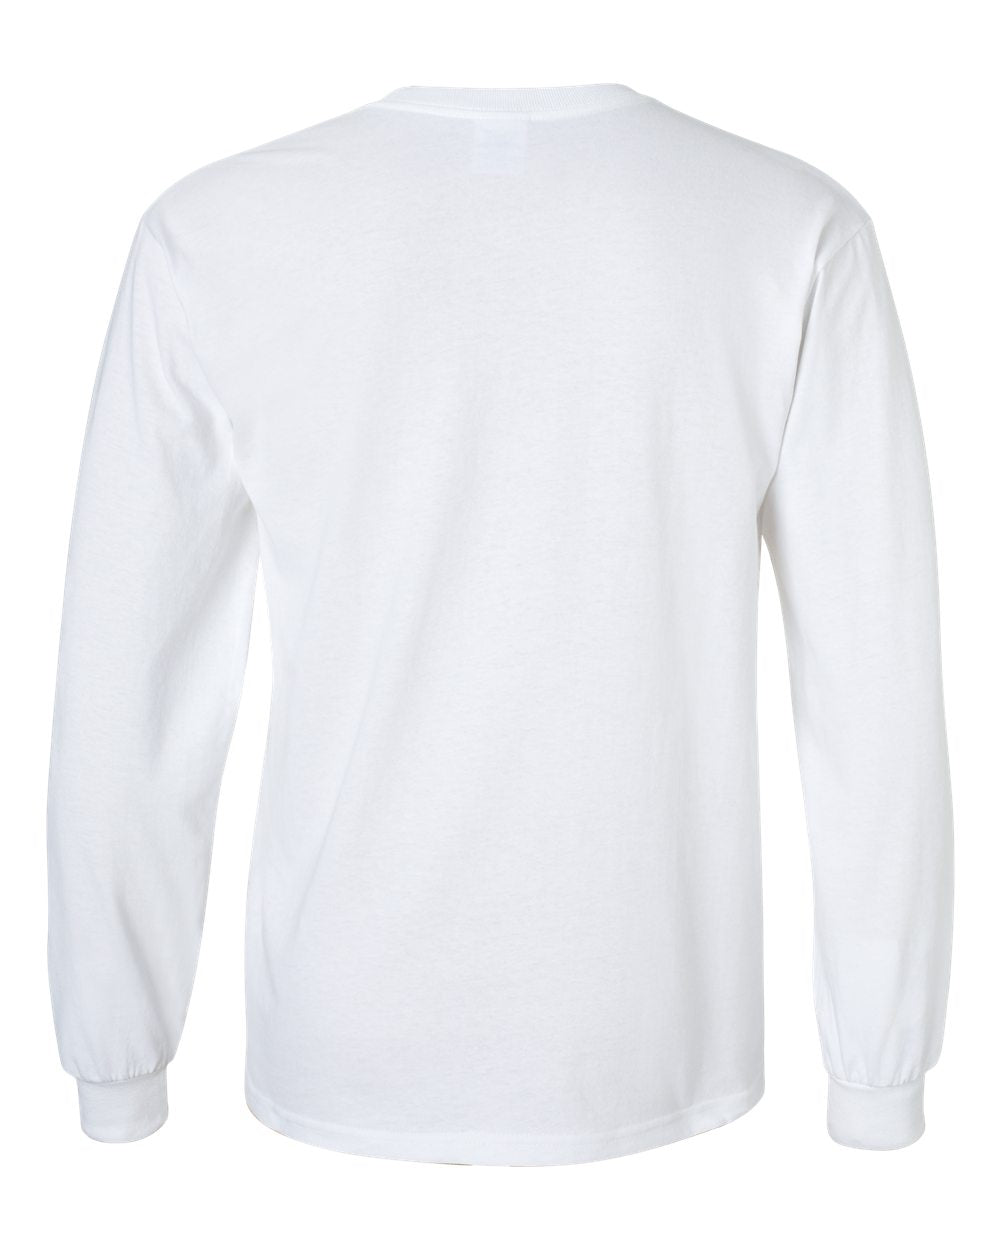 Gildan - Ultra Cotton® Long Sleeve T-Shirt - 2400 SKU#GUCLST2400